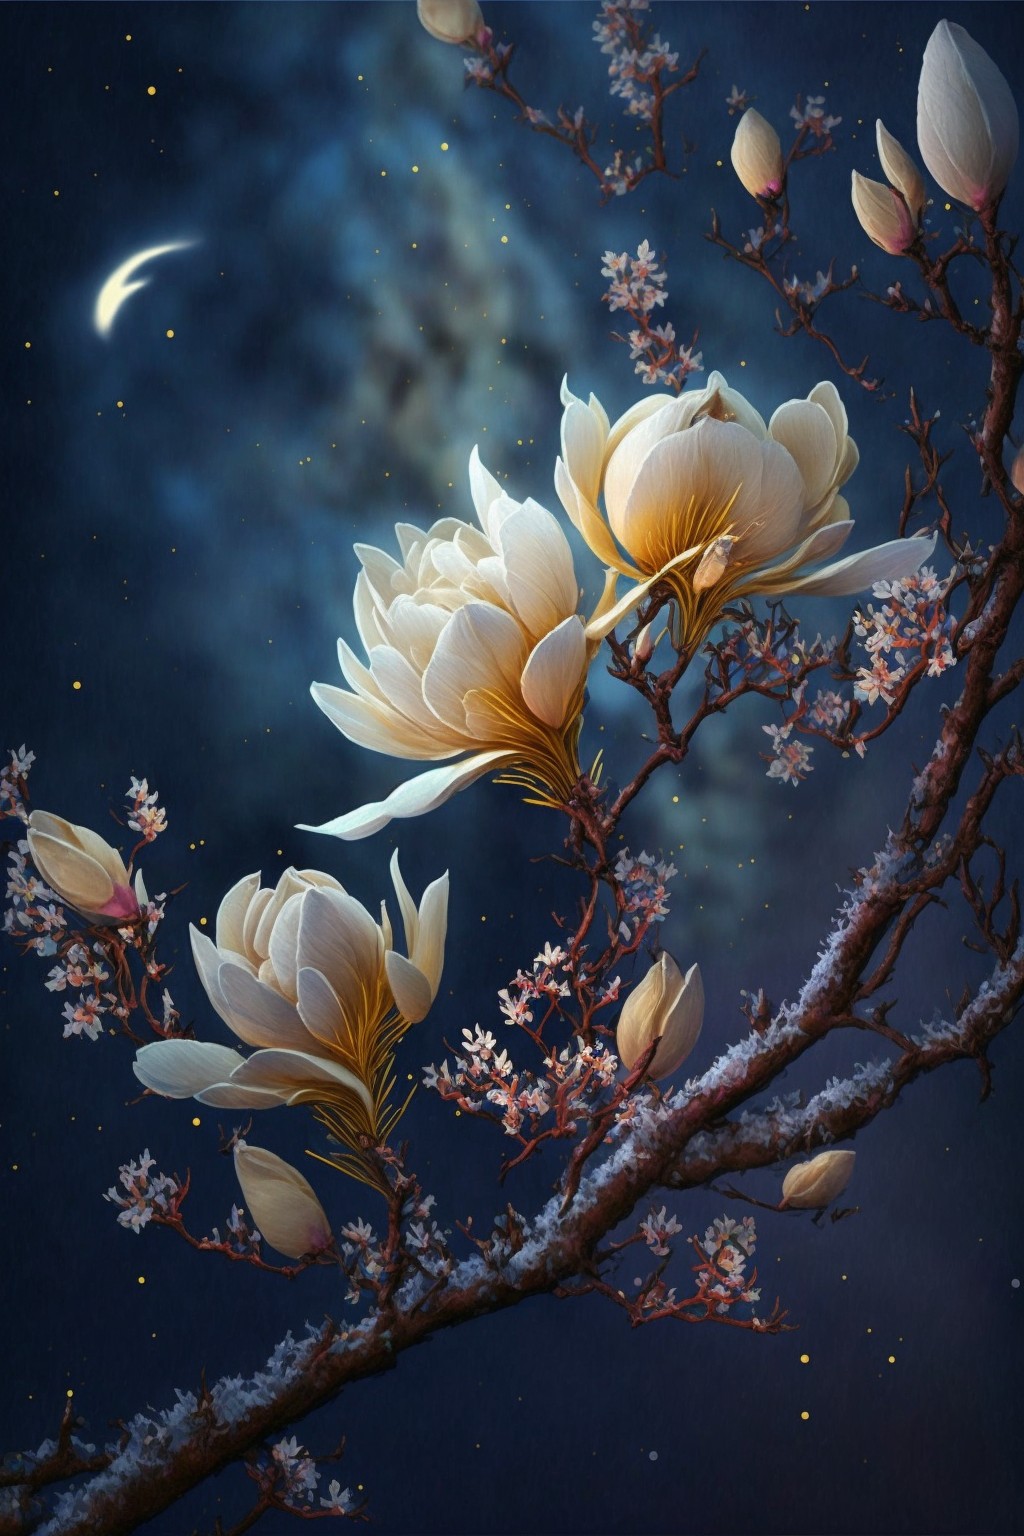 magnolia blooming at night